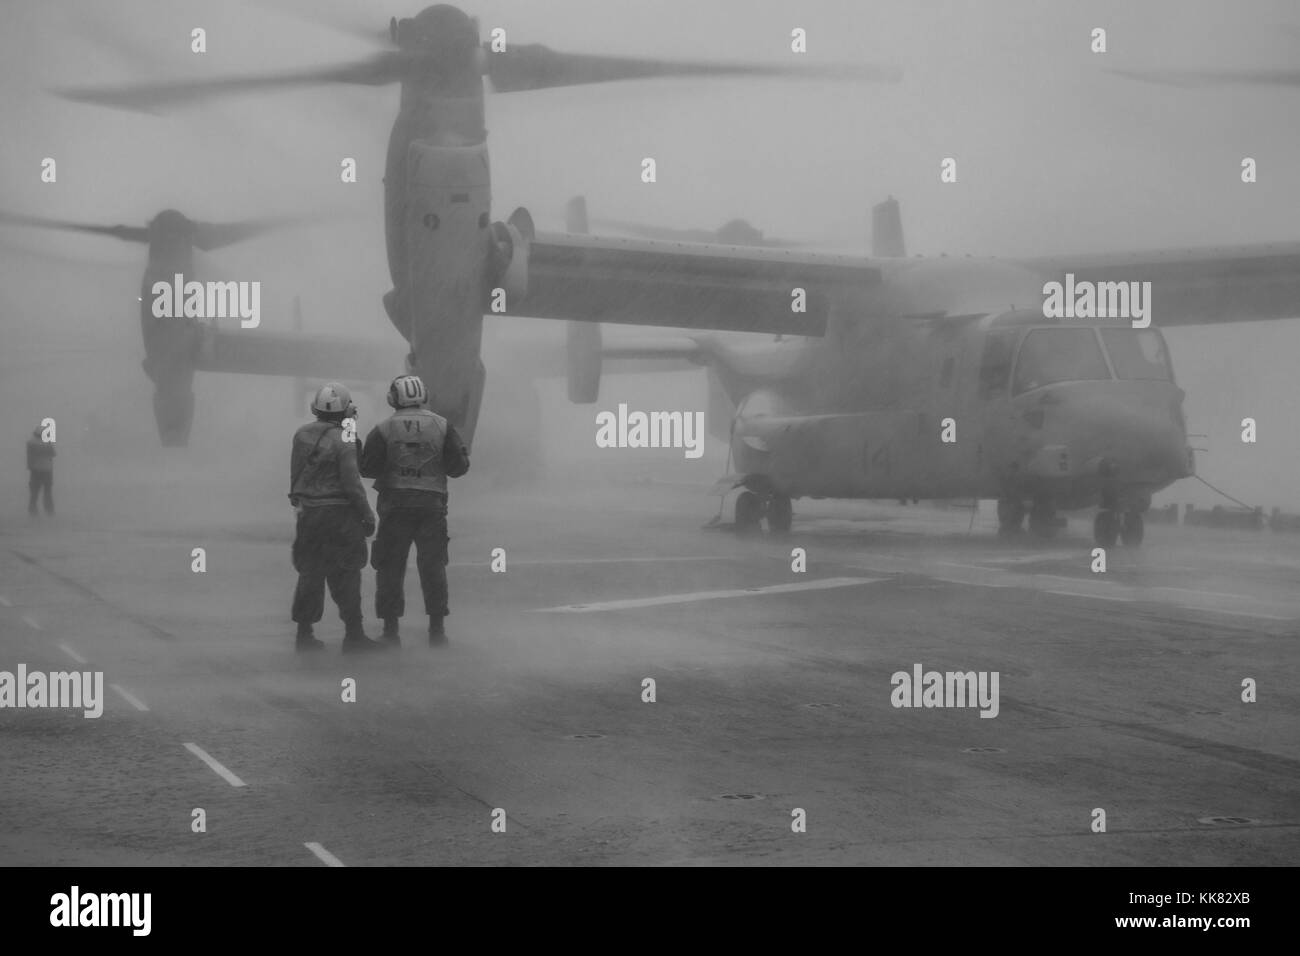 I marinai a prepararsi per le operazioni di volo sul ponte di volo dell'assalto anfibio nave USS Kearsarge LHD 3, Oceano Atlantico. Immagine cortesia la comunicazione di massa specialista in seconda classe Hunter S. Harwell/US Navy, 2015. Foto Stock